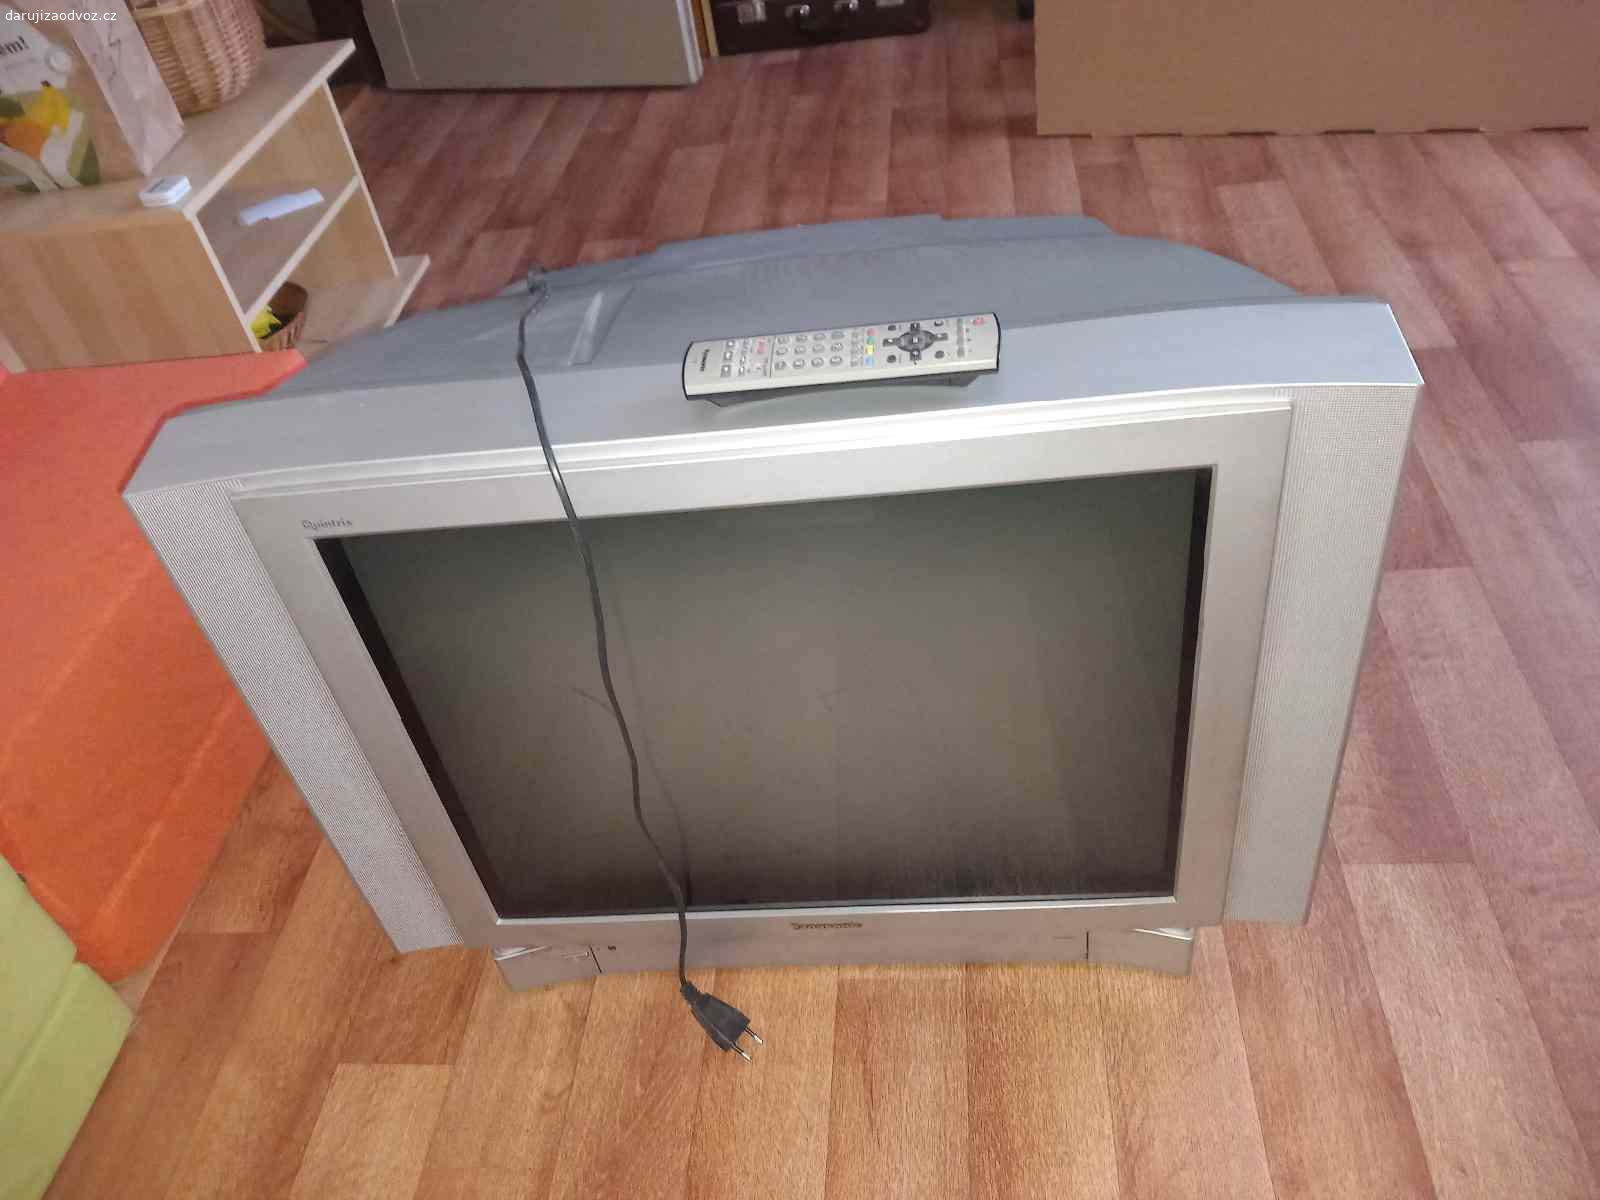 Televizor Panasonic. Daruji  klasický televizor Panasonic 72 cm, do poslední chvíle v provozu, bez poruchy 16 let